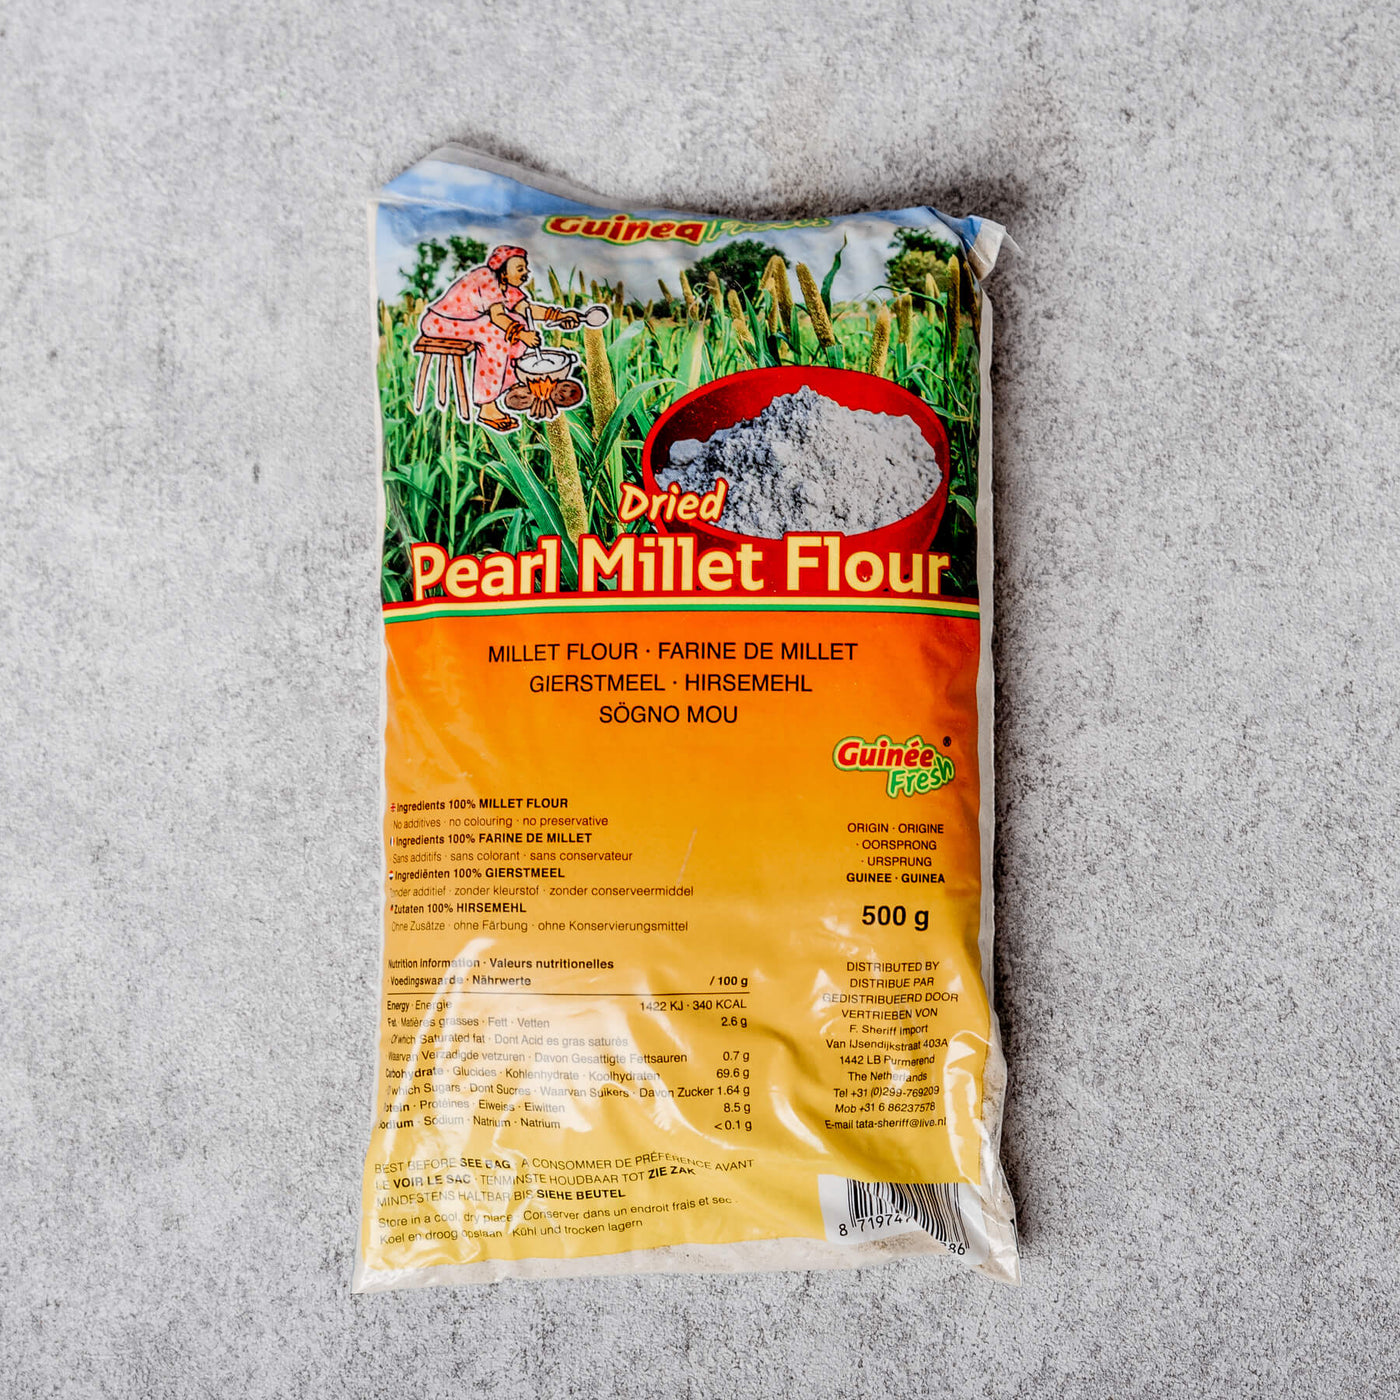 Guinea Fresh - Dried Pearl Millet Flour